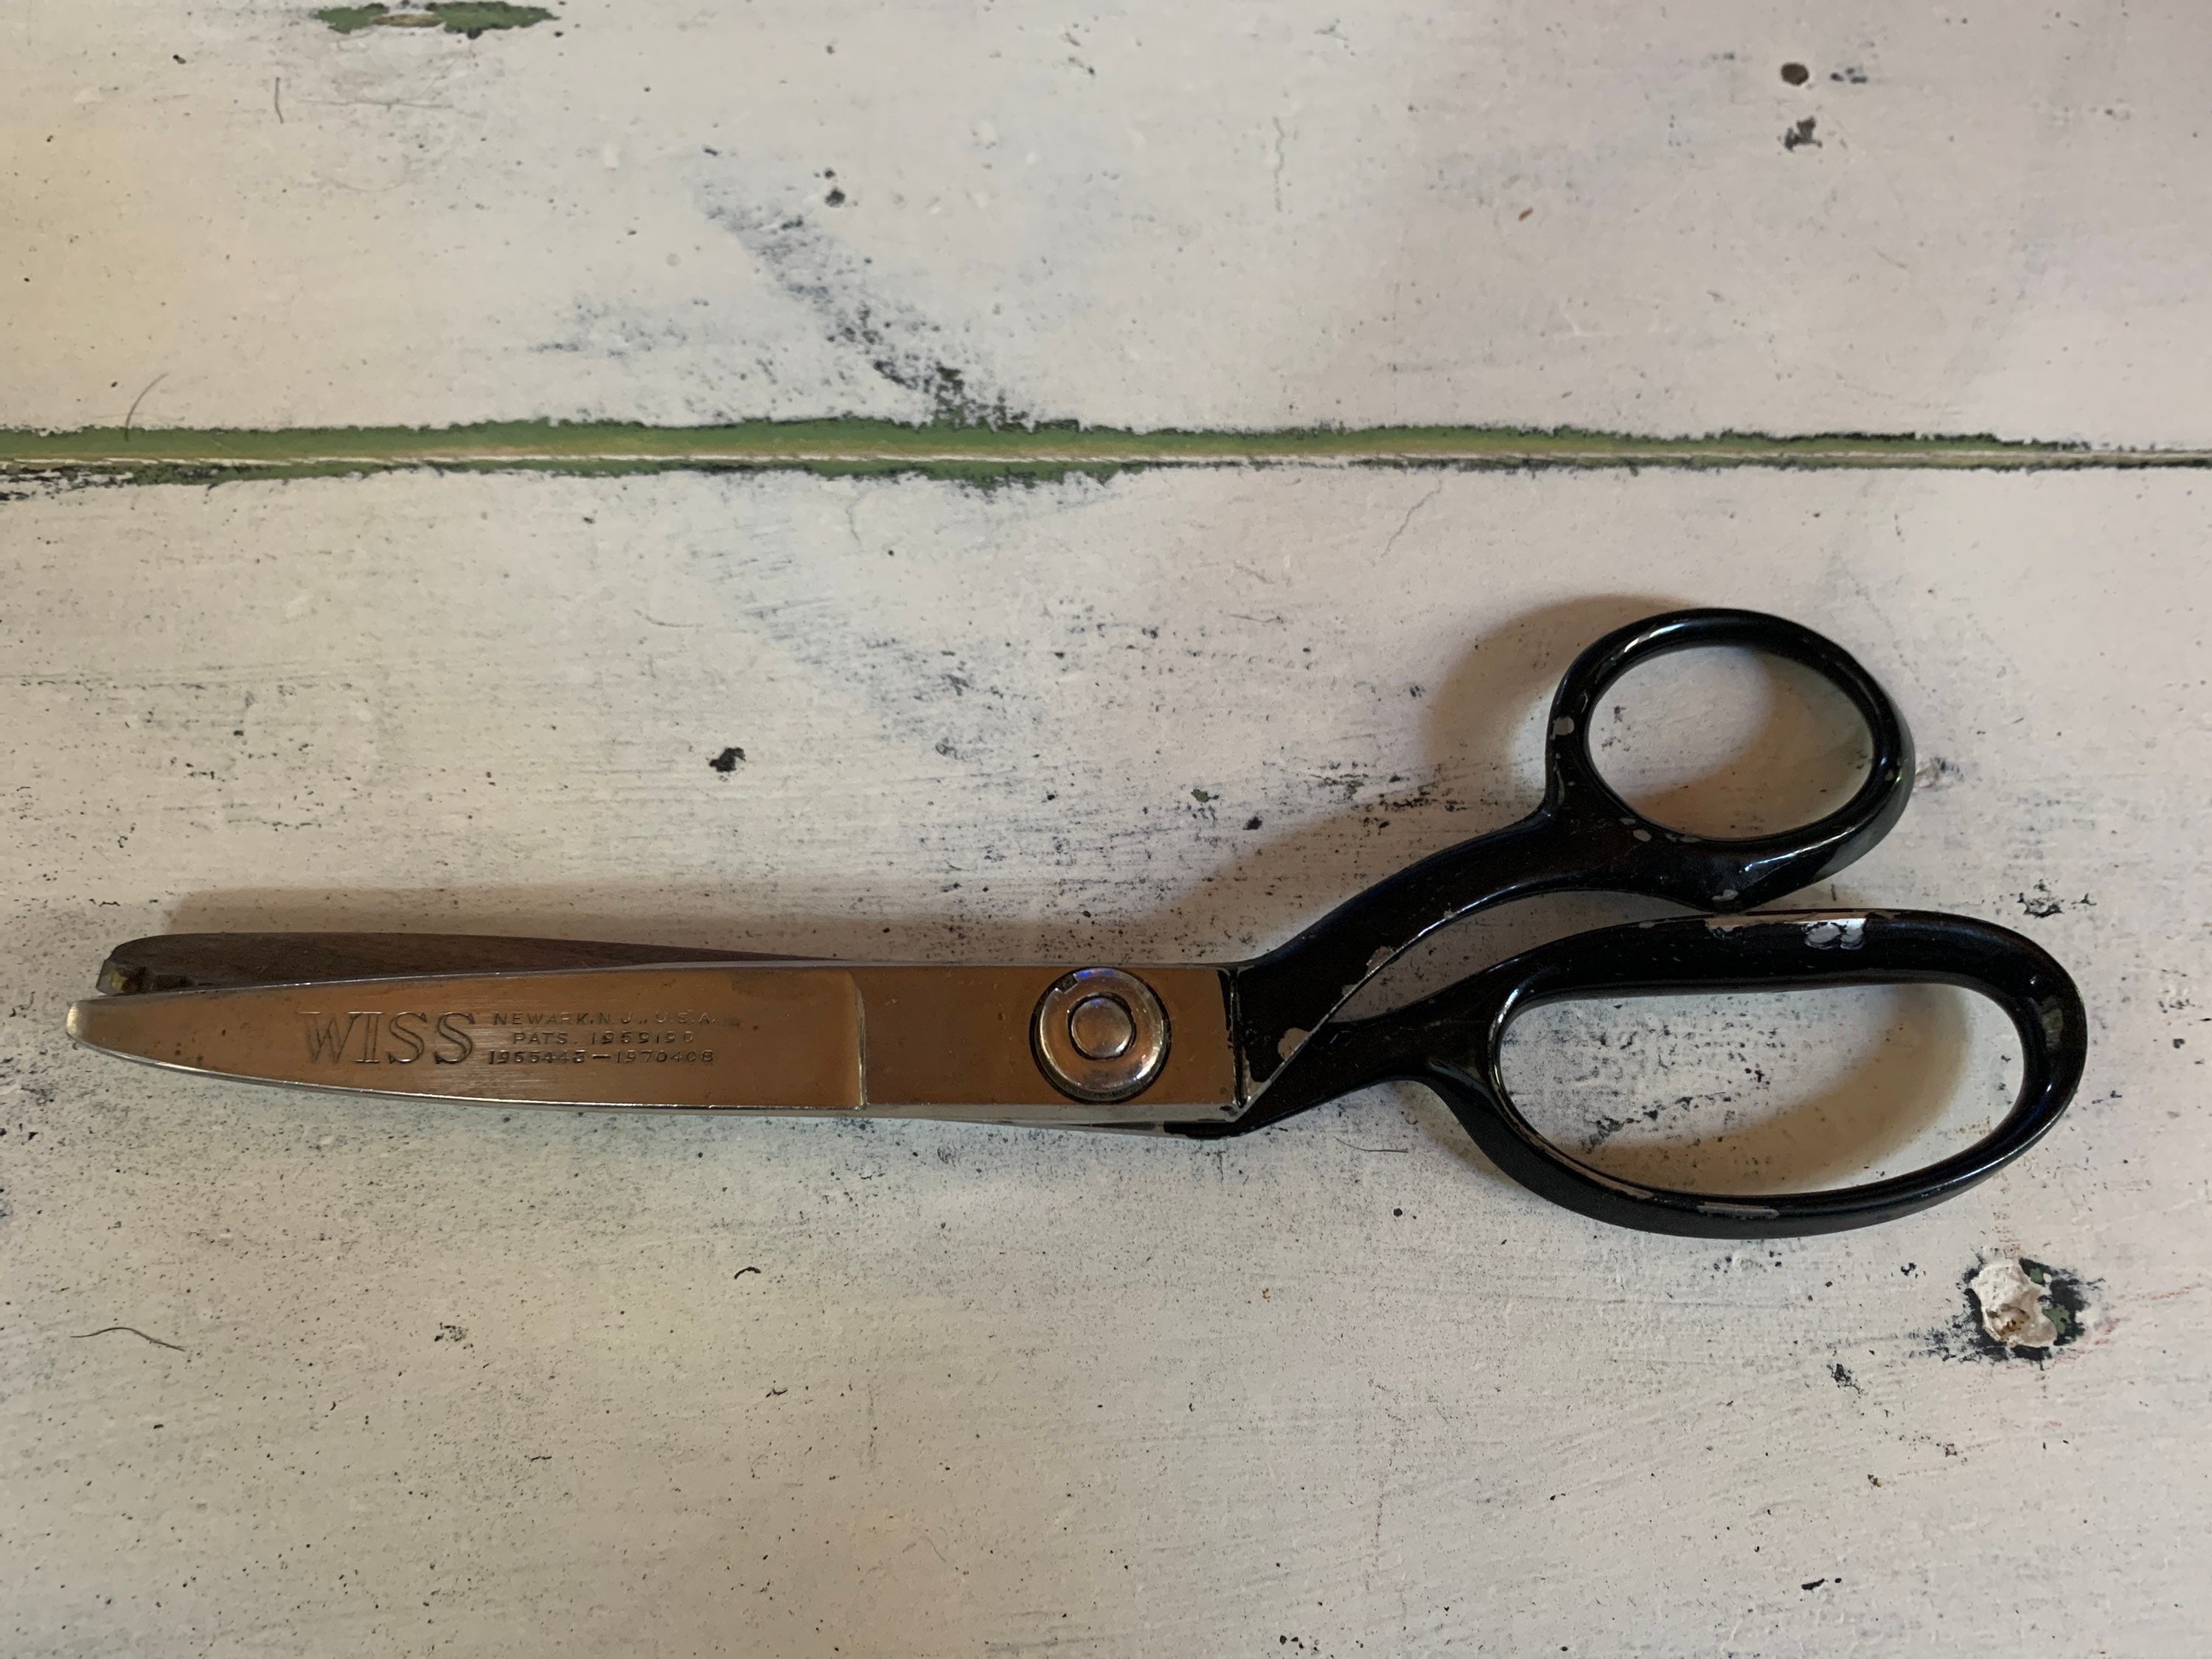 Belmont 8-1/2 All-steel Pinking Shears Scissors 